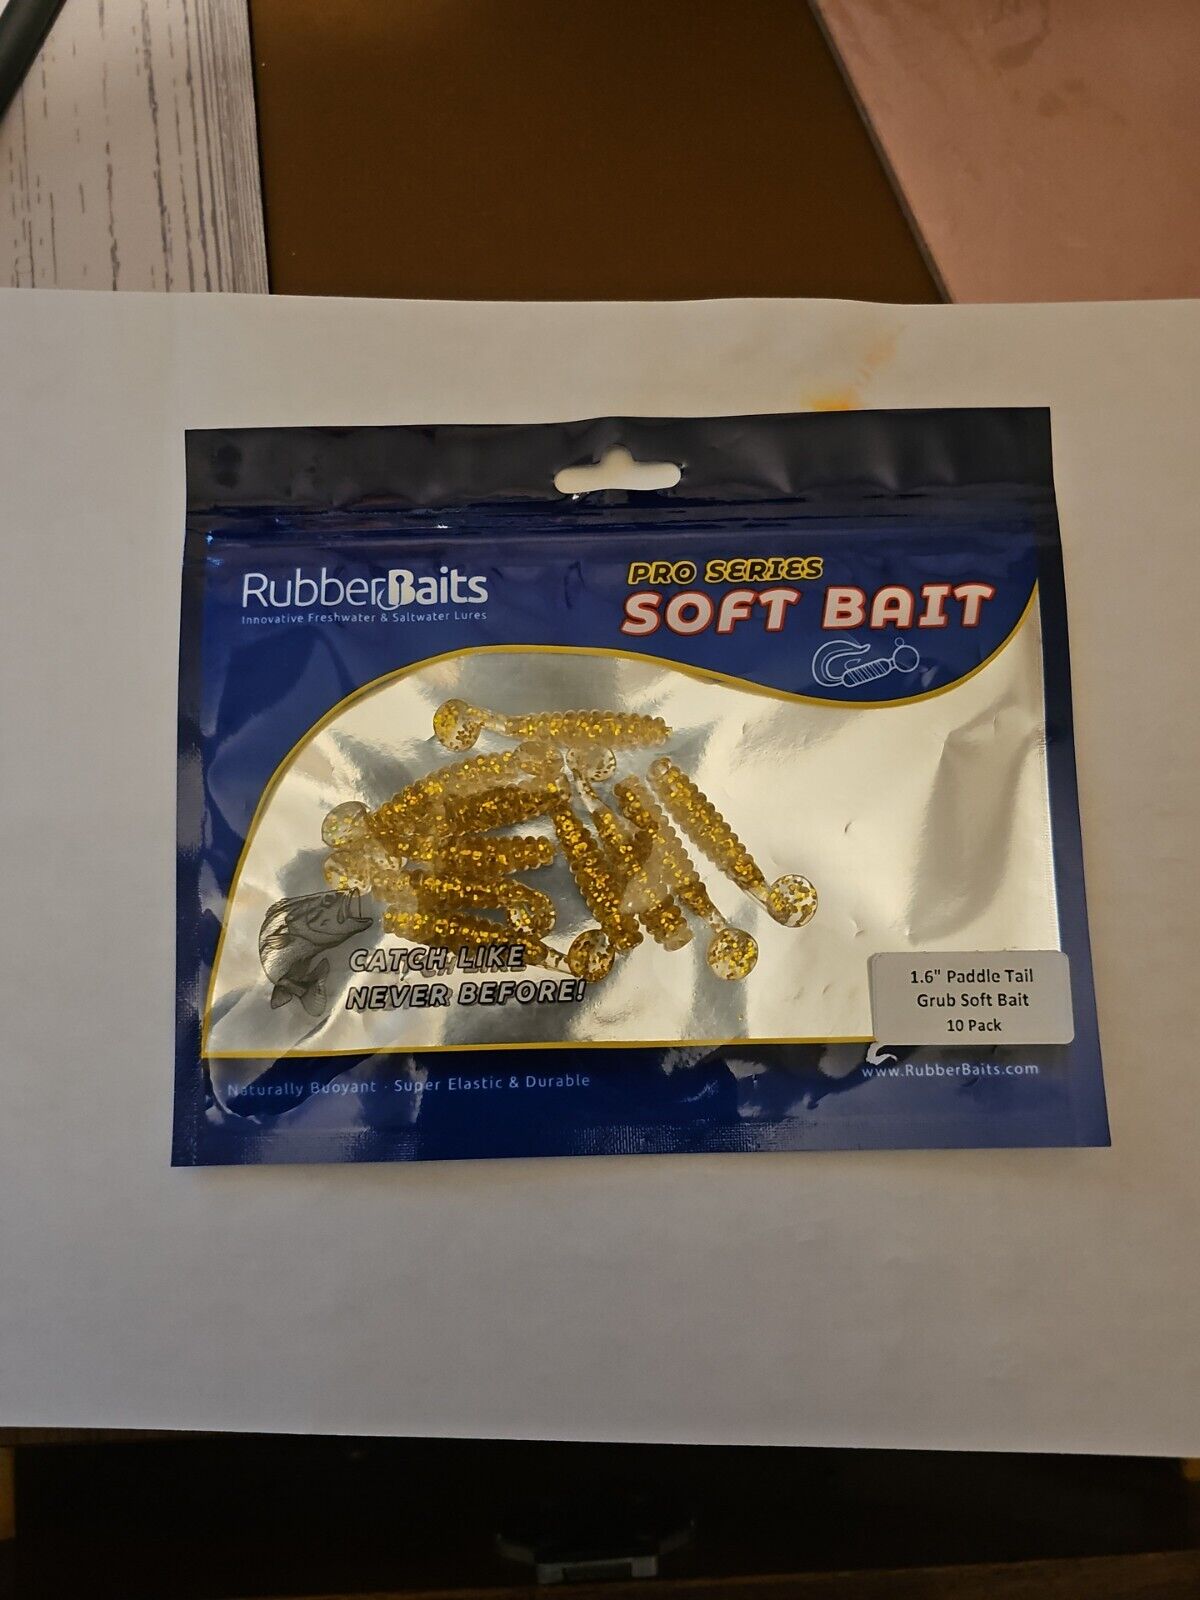 1.6" Paddle Tail Grub Soft Bait